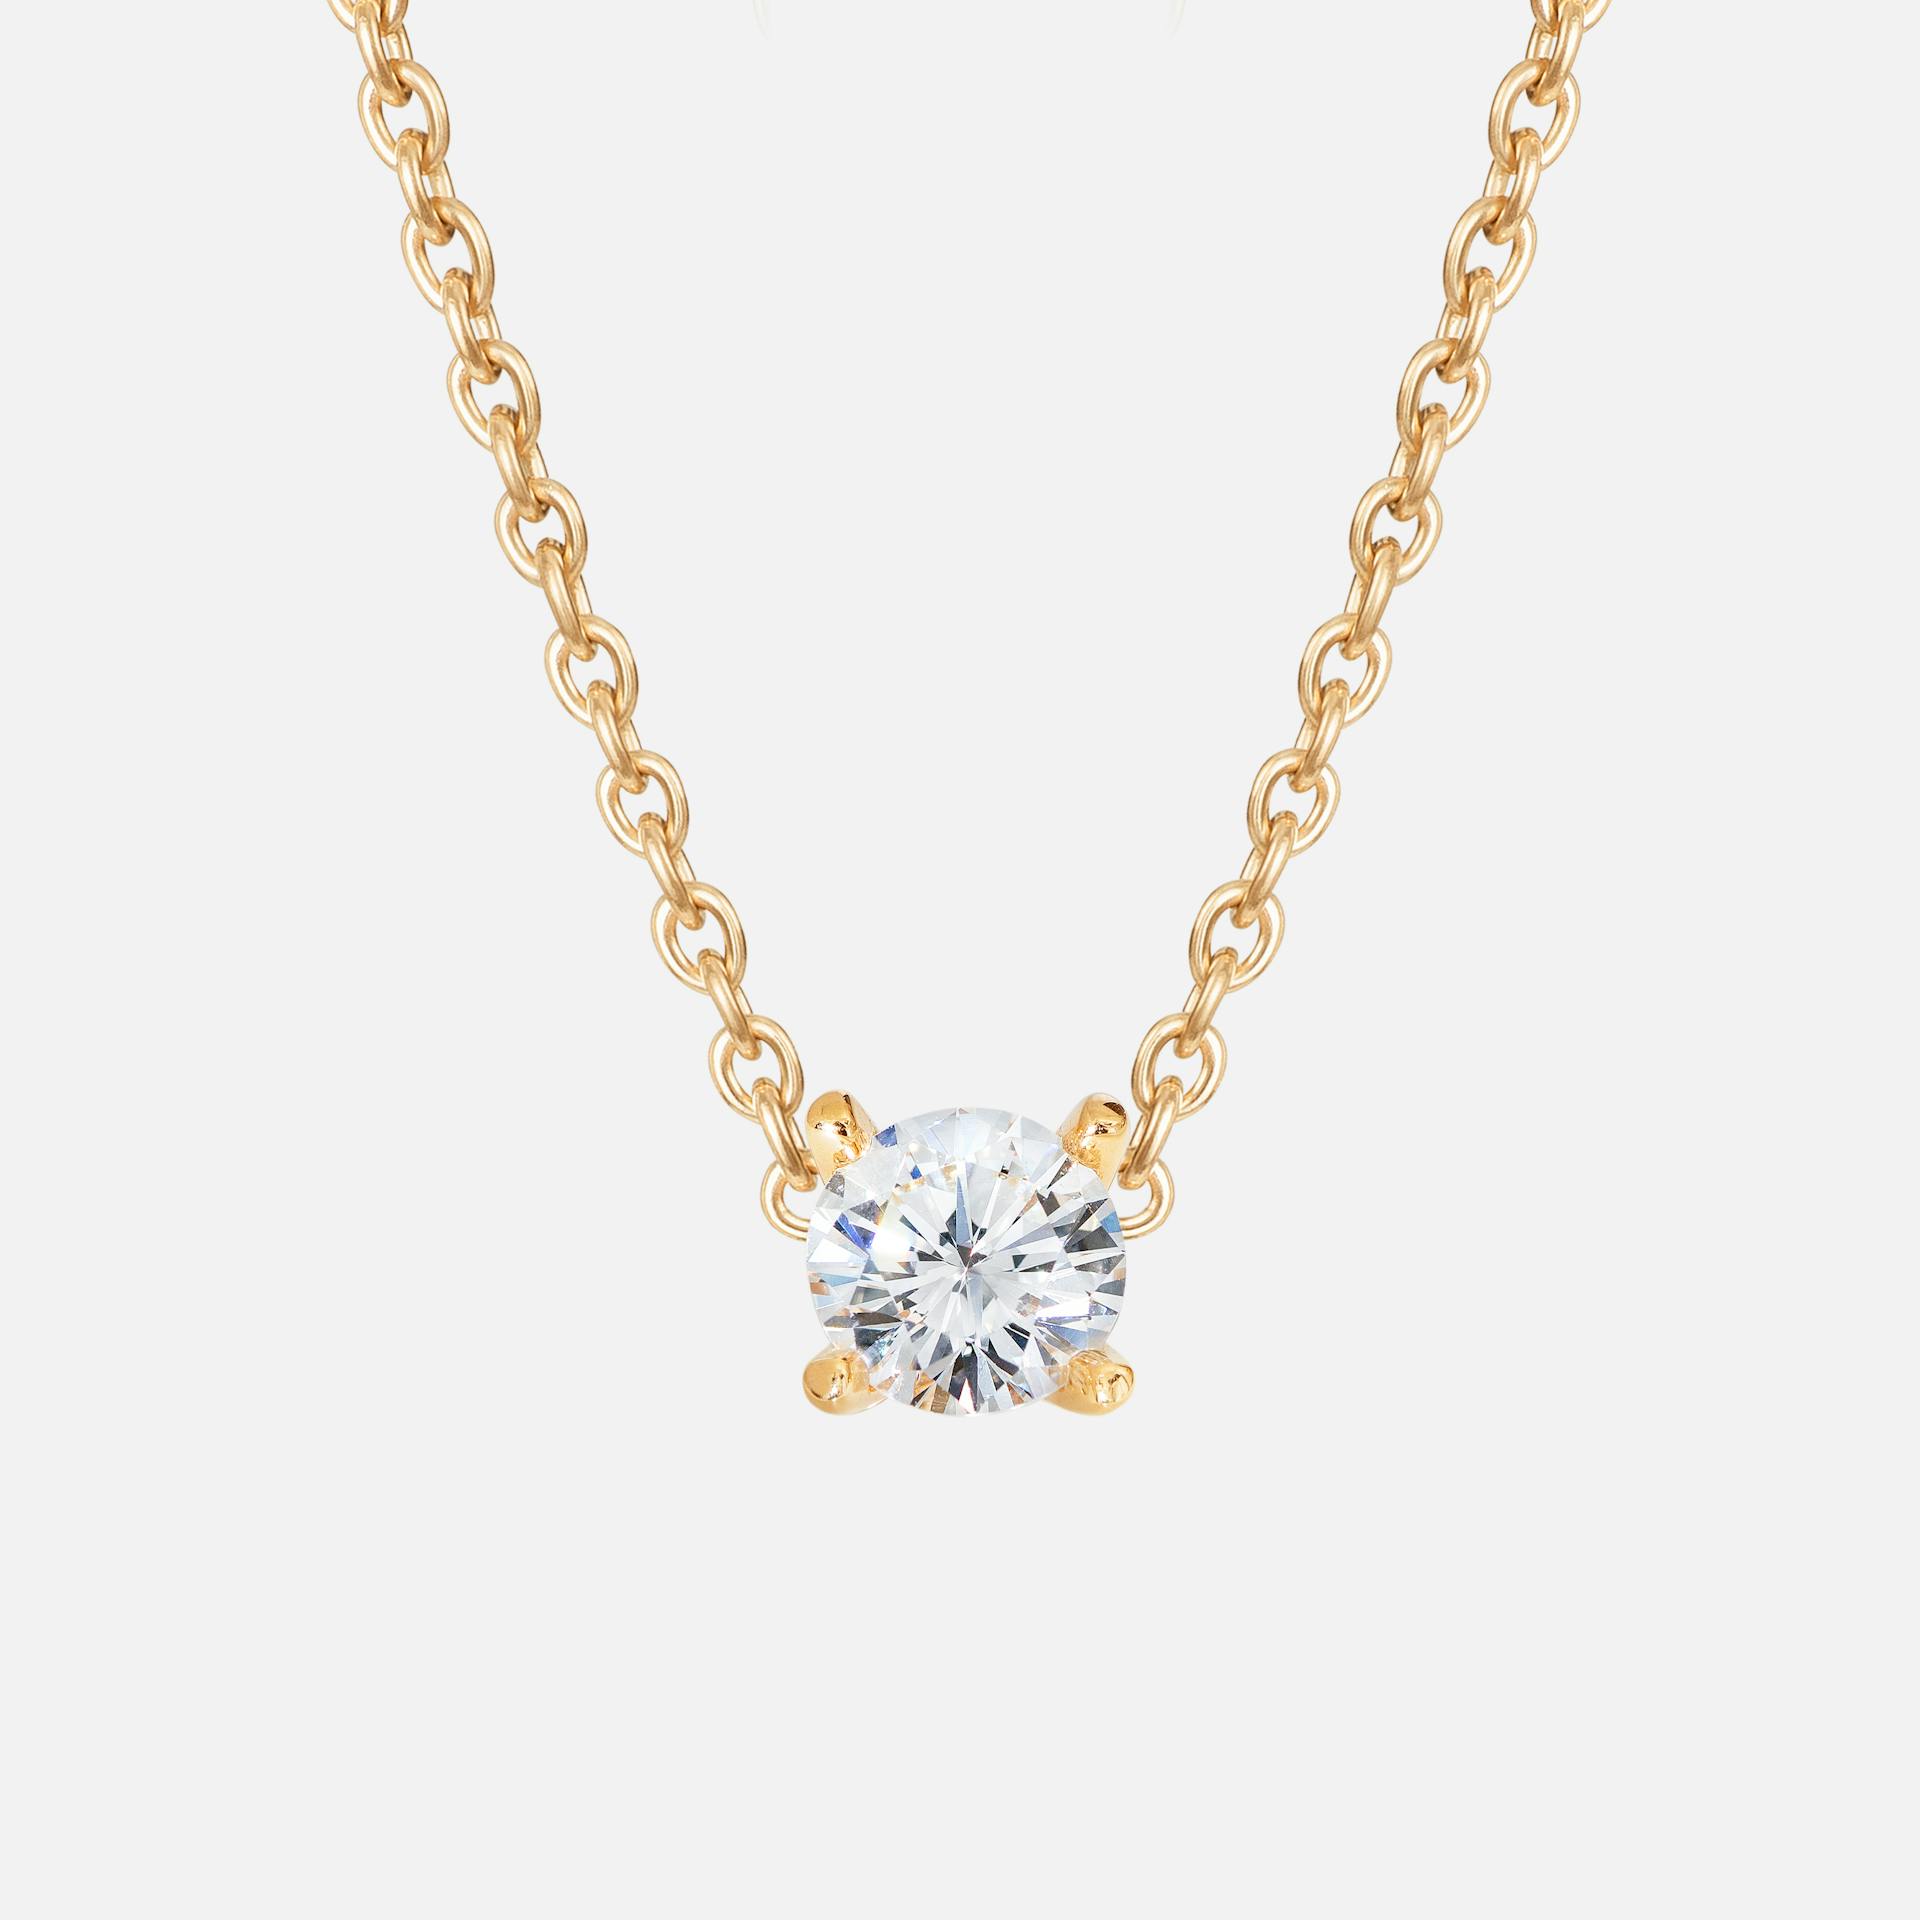 Solitaire necklace 18k guld sat med brillantslebet diamanter hver fra 0,30 ct. TW. VS.